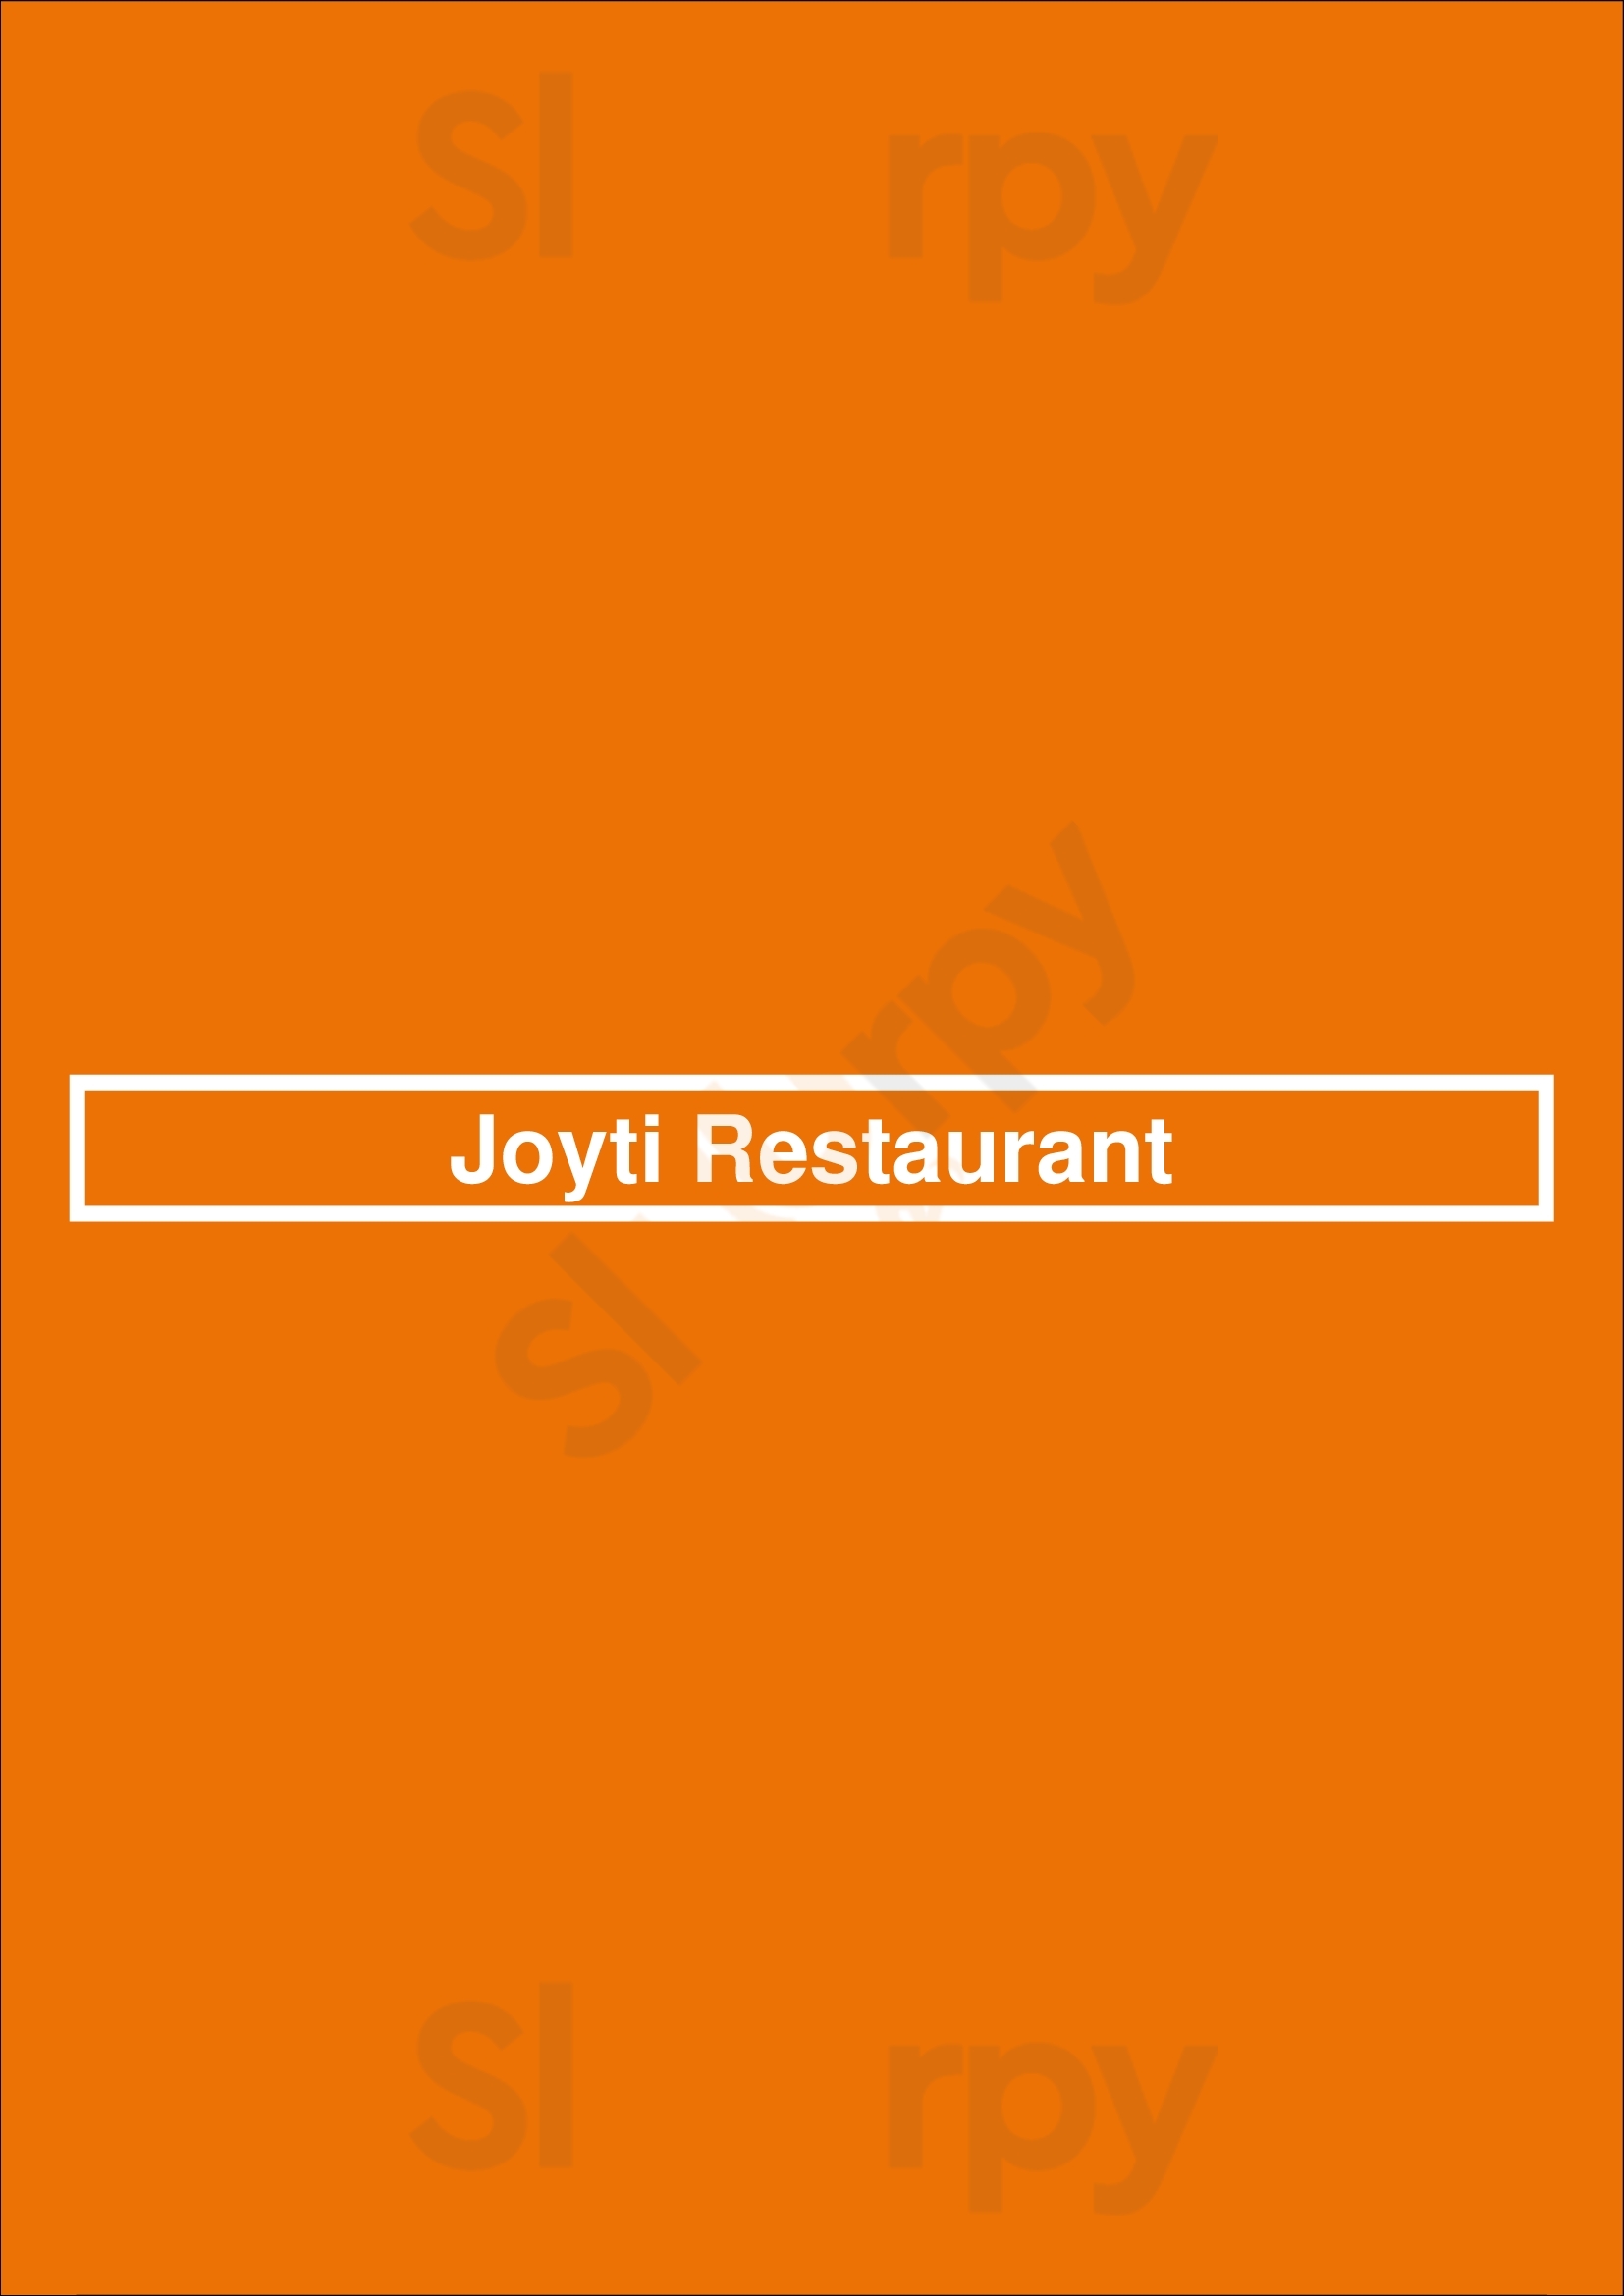 Joyti Restaurant Paris Menu - 1